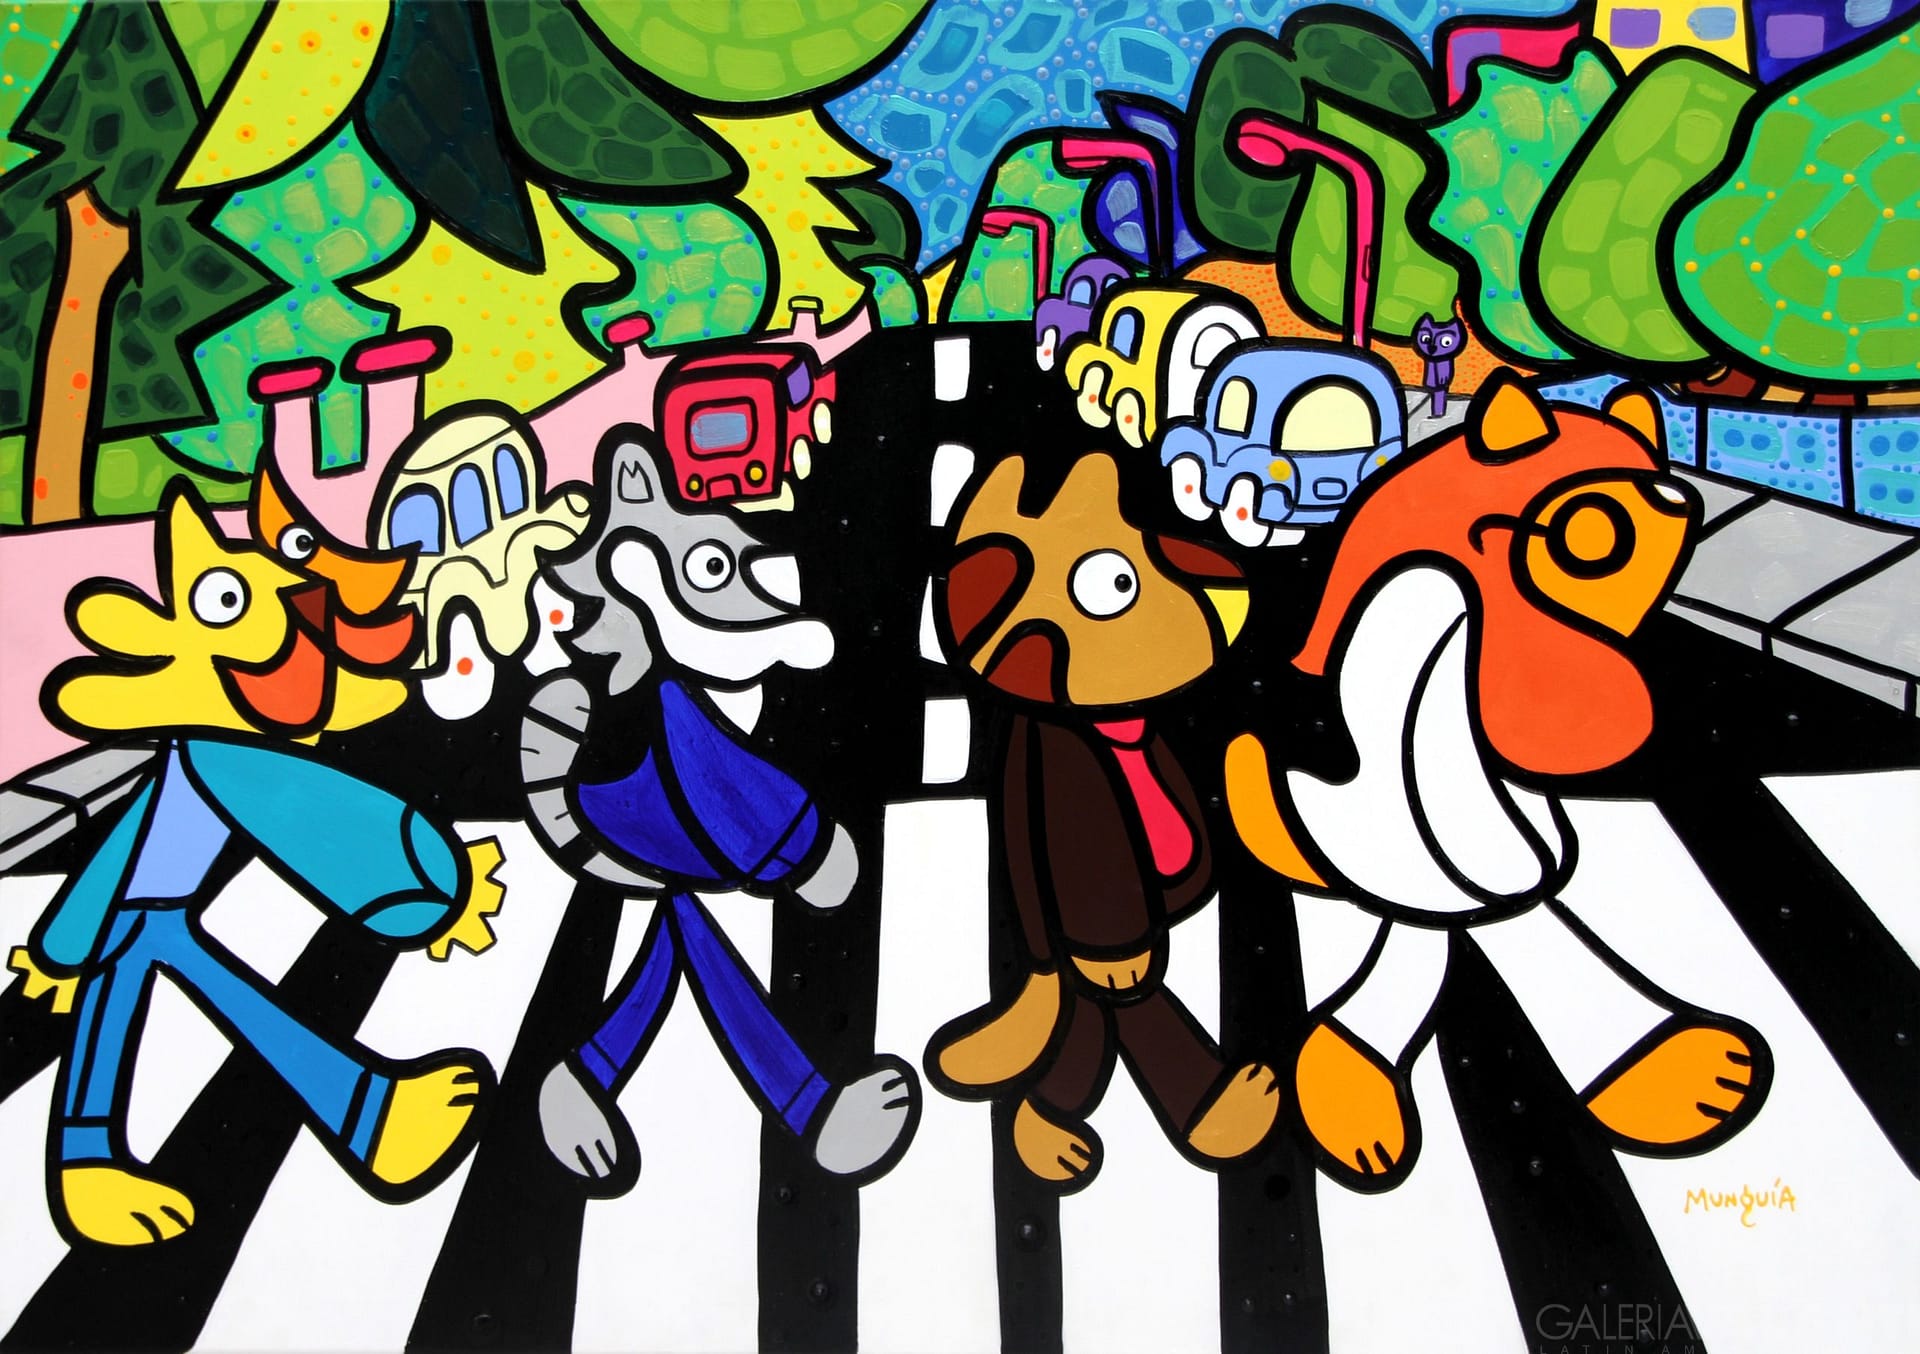 Cuatro gatos “Abbey Road”